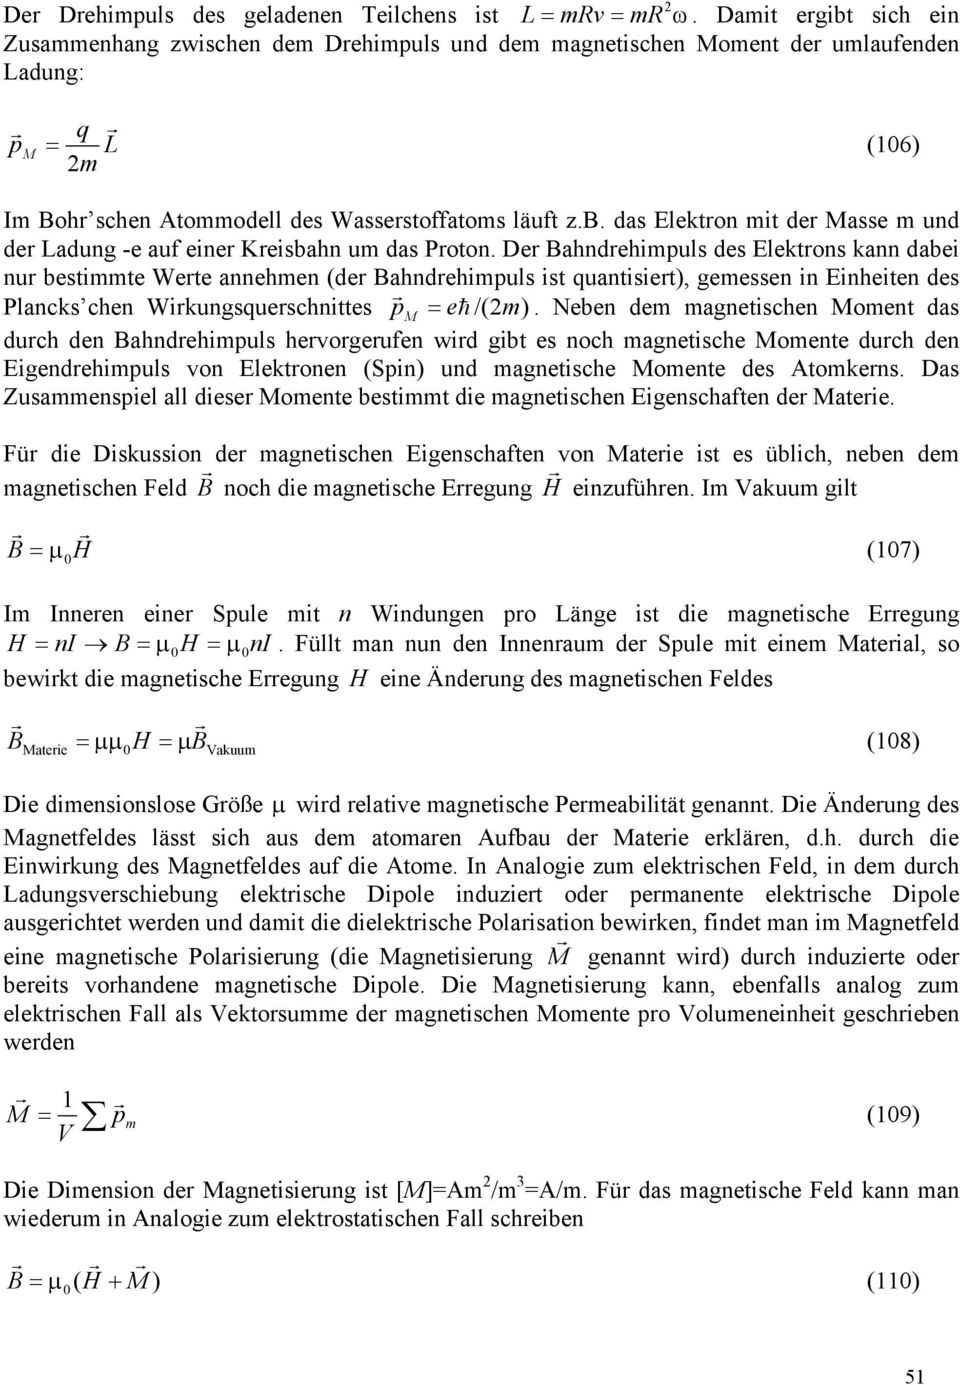 De Bahndehimpuls des Elektons kann dabei nu bestimmte Wete annehmen (de Bahndehimpuls ist quantisiet), gemessen in Einheiten des Plancks chen Wikungsqueschnittes p M = eh /( m).